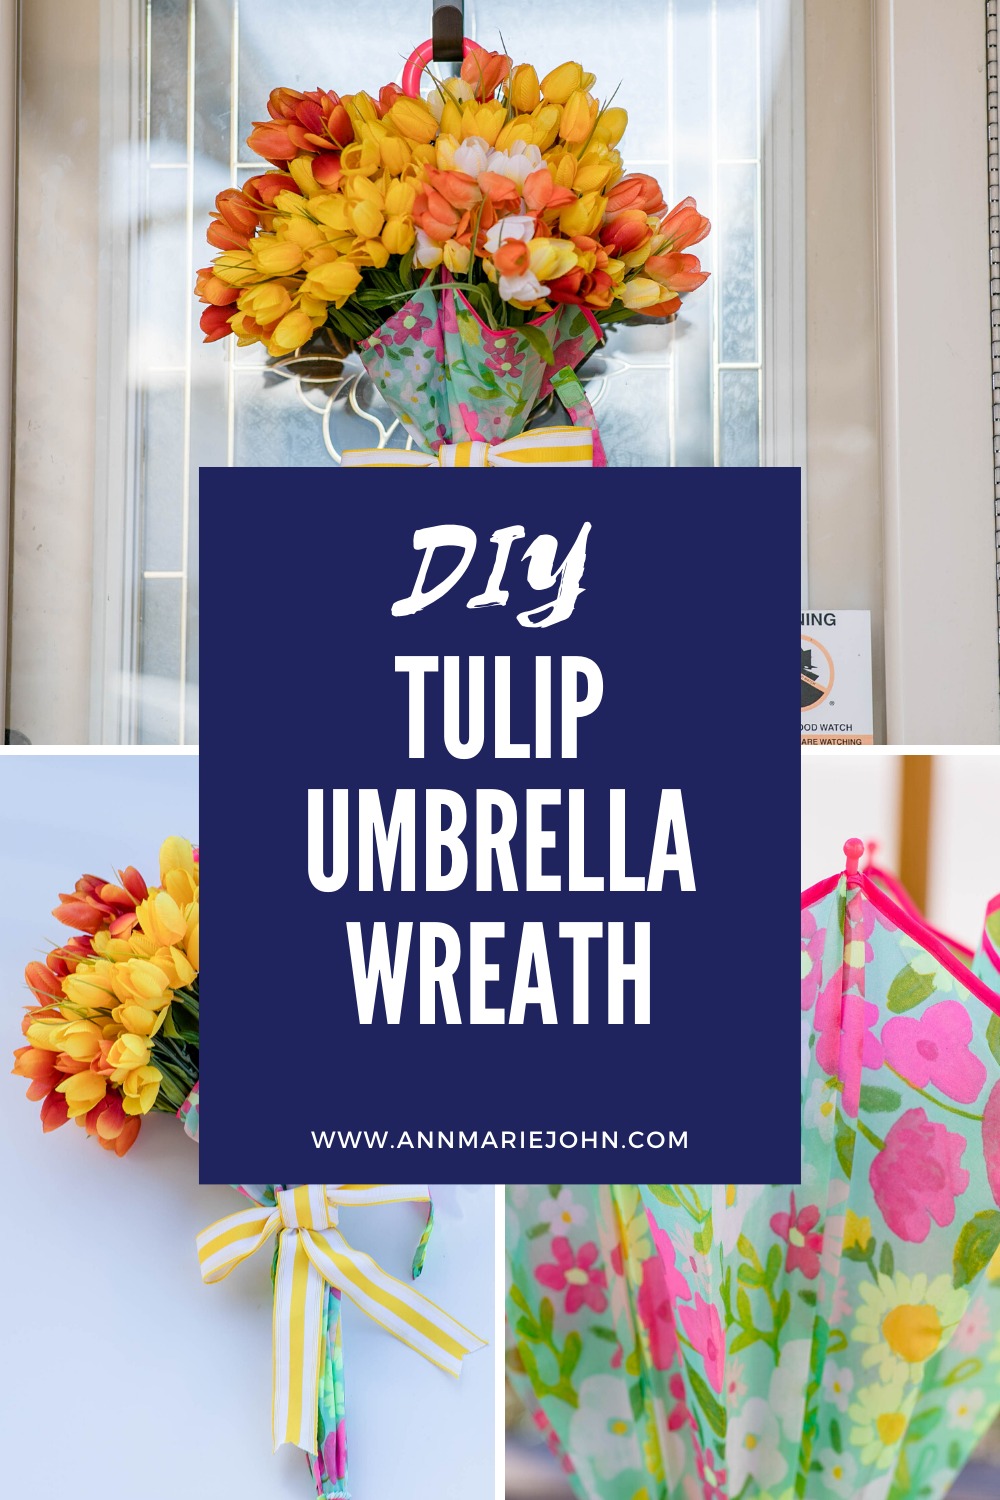 Tulip Umbrella Wreath Pinterest Image